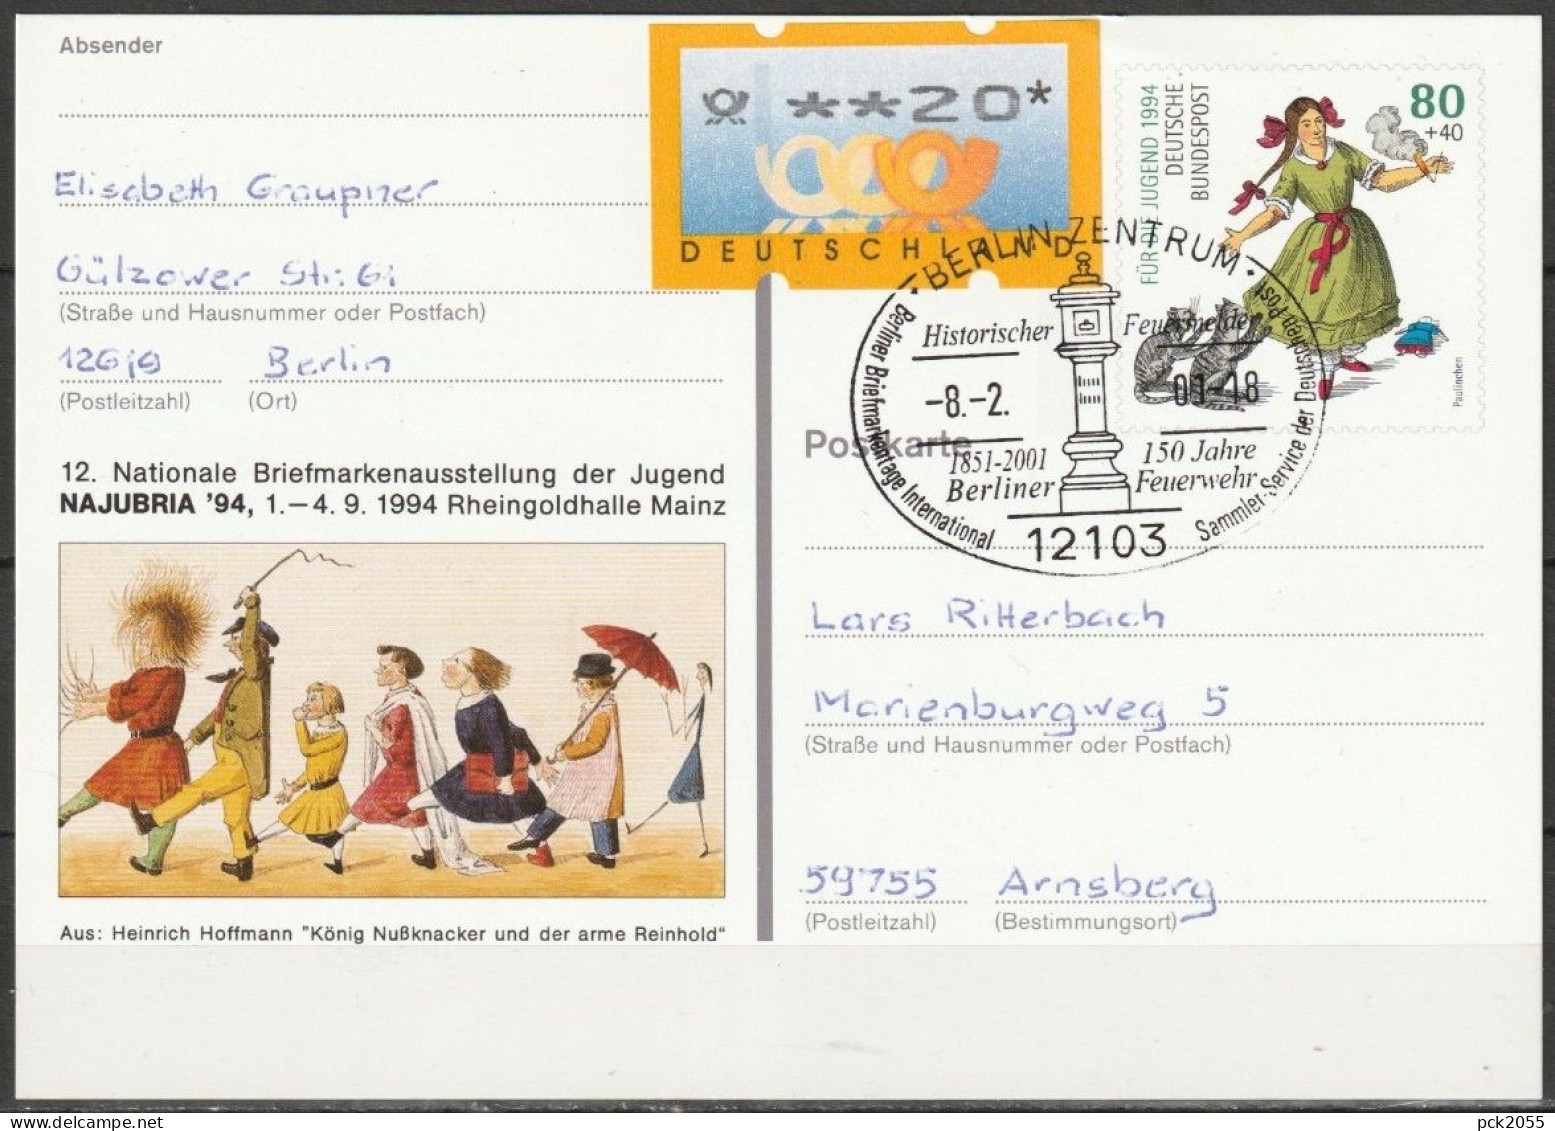 BRD Ganzsache 1994 PSo 34 NAJUBRIA 94 Mainz SST. Berlin Historischer Feuermelder 8.2.2001 (d 3547)günstige Versandkosten - Postkarten - Gebraucht